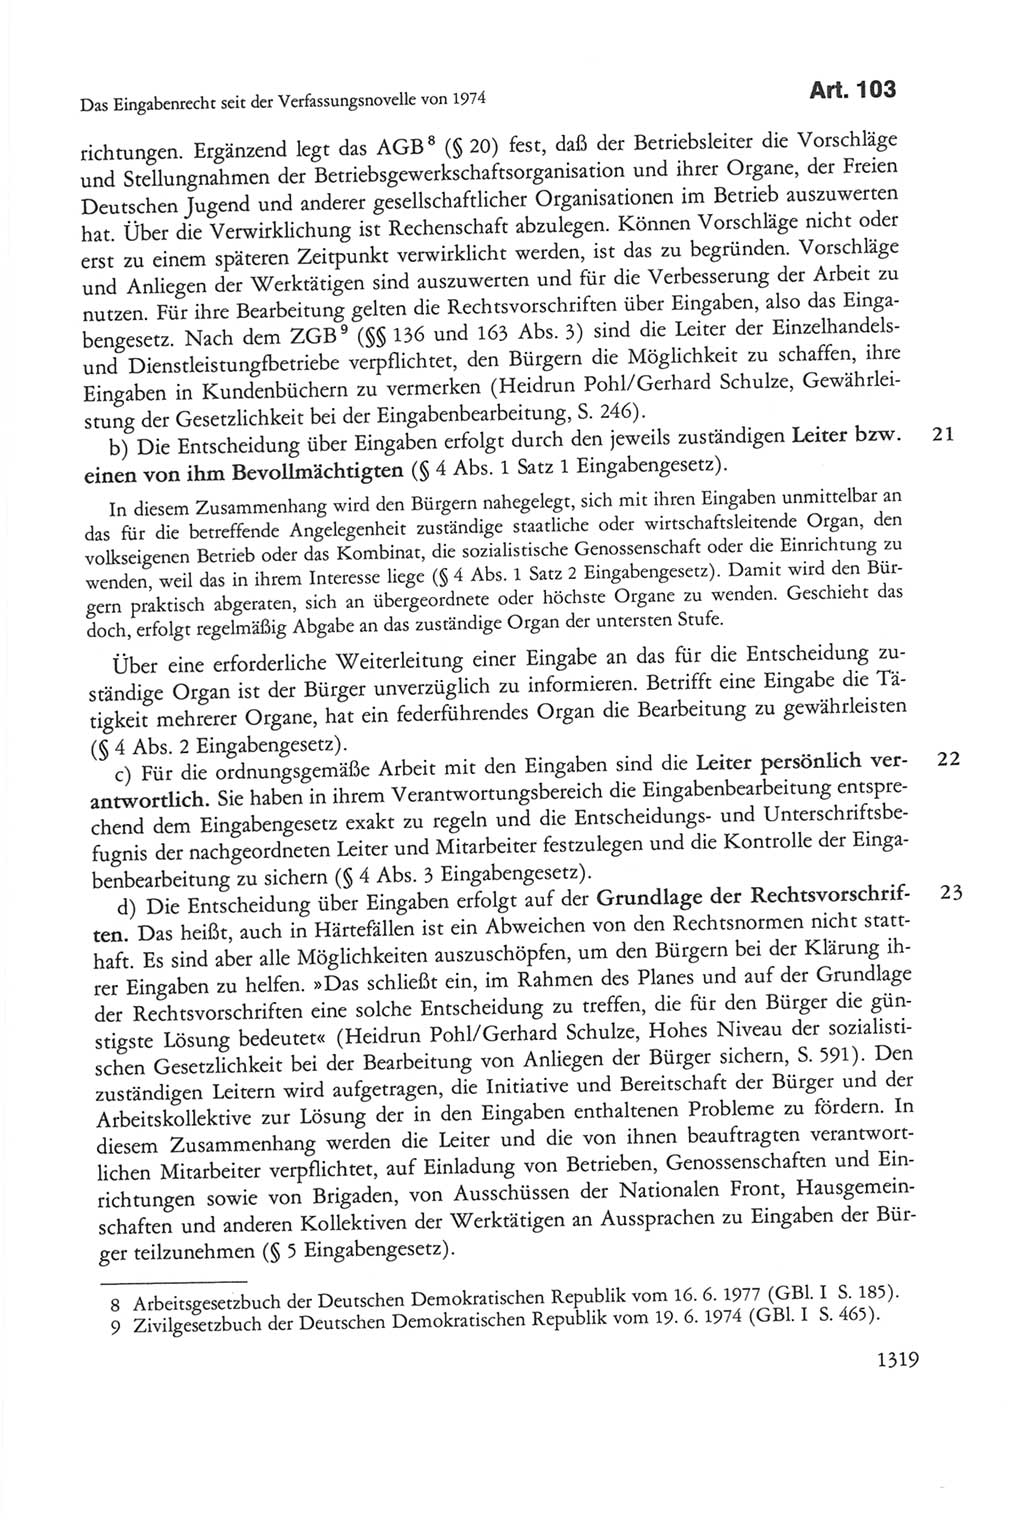 Die sozialistische Verfassung der Deutschen Demokratischen Republik (DDR), Kommentar mit einem Nachtrag 1997, Seite 1319 (Soz. Verf. DDR Komm. Nachtr. 1997, S. 1319)